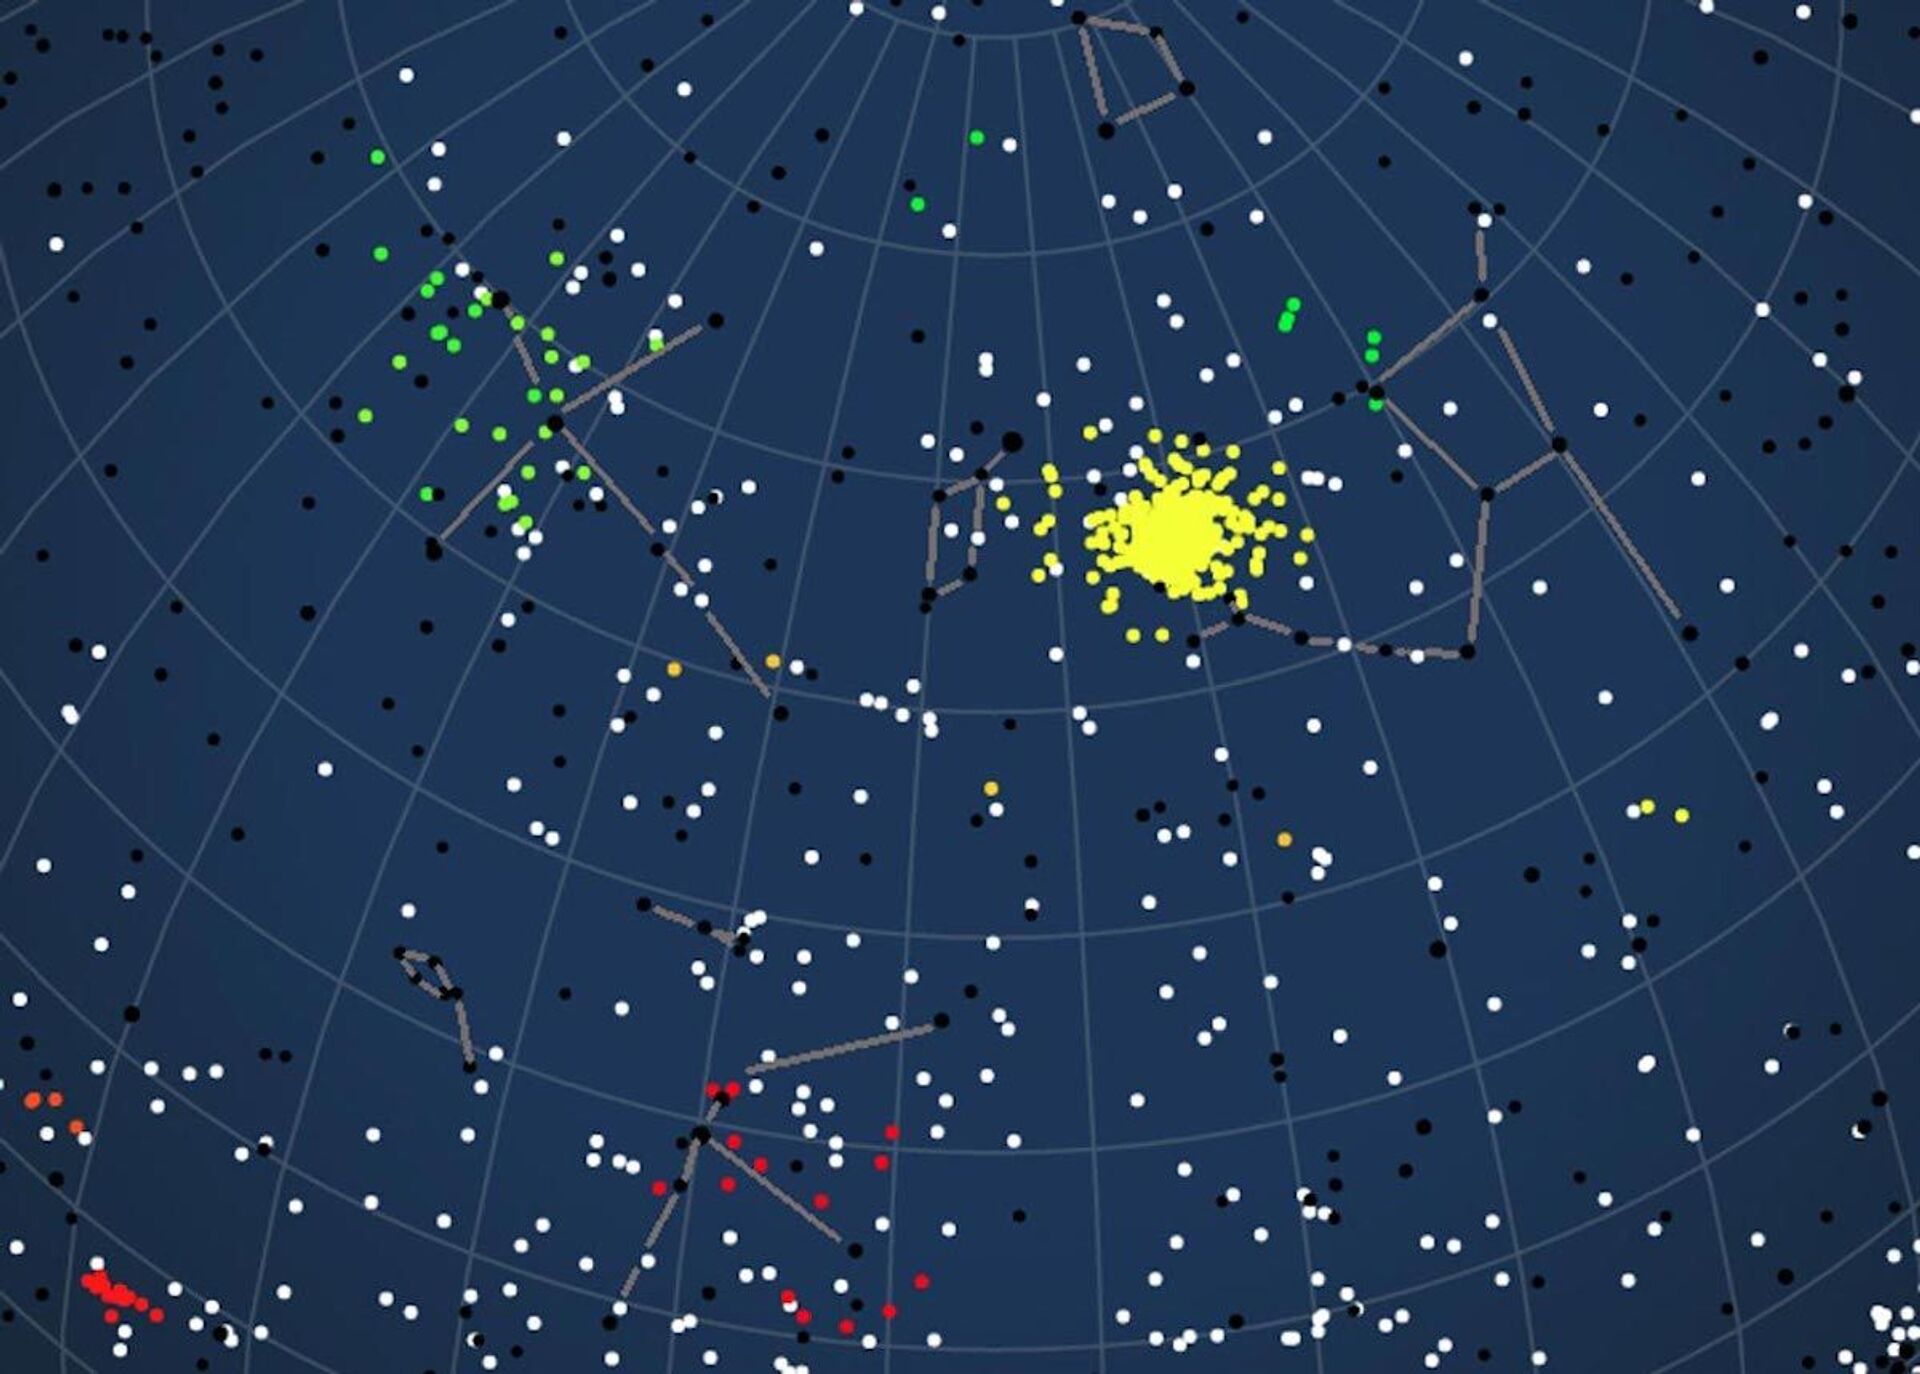 Cientistas detectam chuvas de meteoros causadas por cometas há 4 mil anos (FOTOS) - Sputnik Brasil, 1920, 24.05.2021